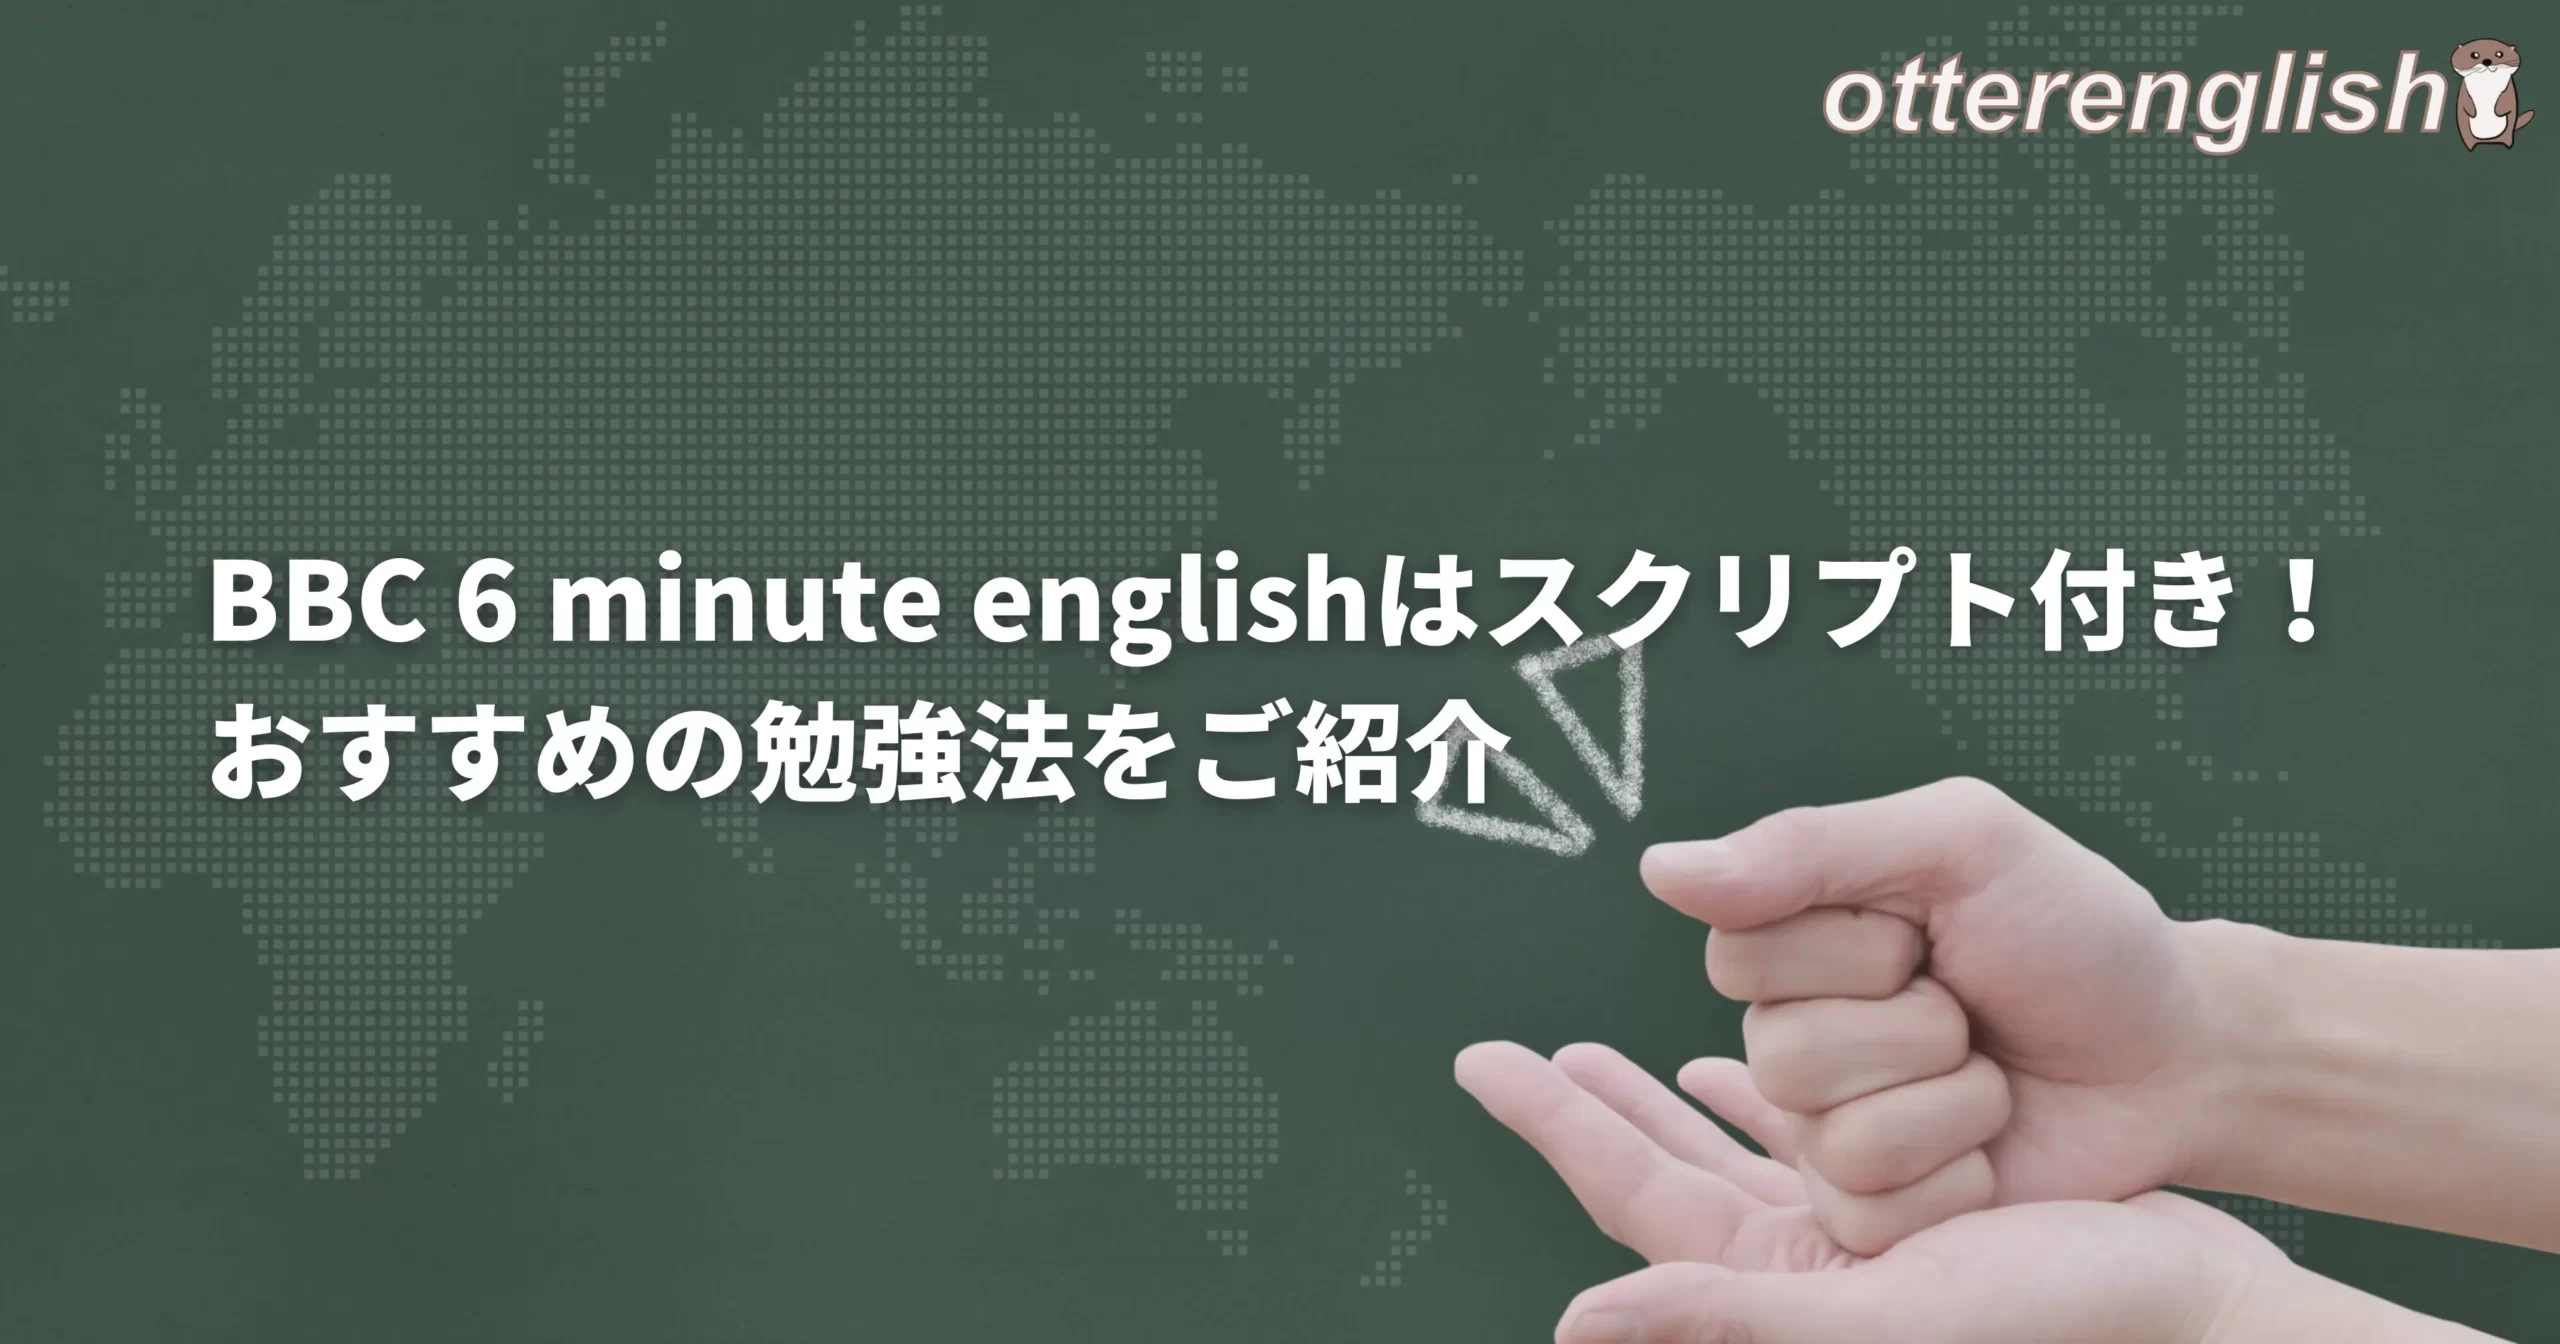 BBCの6minute englishを使った英語学習方法のキャッチ